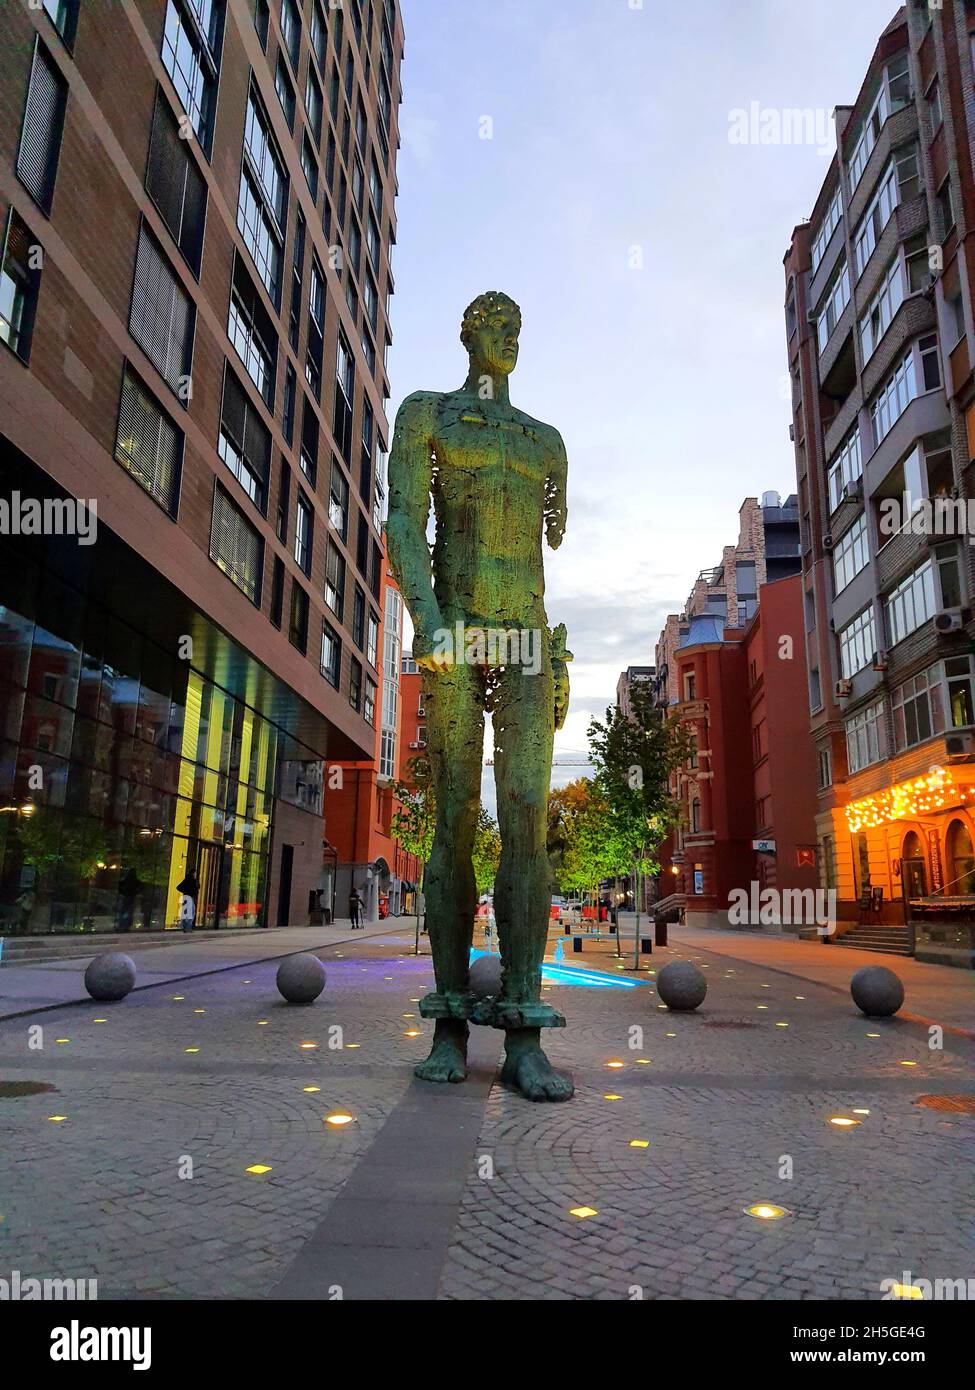 Une sculpture en fer forgé Atlant homme se dresse sur la rue parmi les gratte-ciel, de grands bâtiments.Objet d'art décoratif statue en métal dans la ville ukrainienne Dnipro Banque D'Images